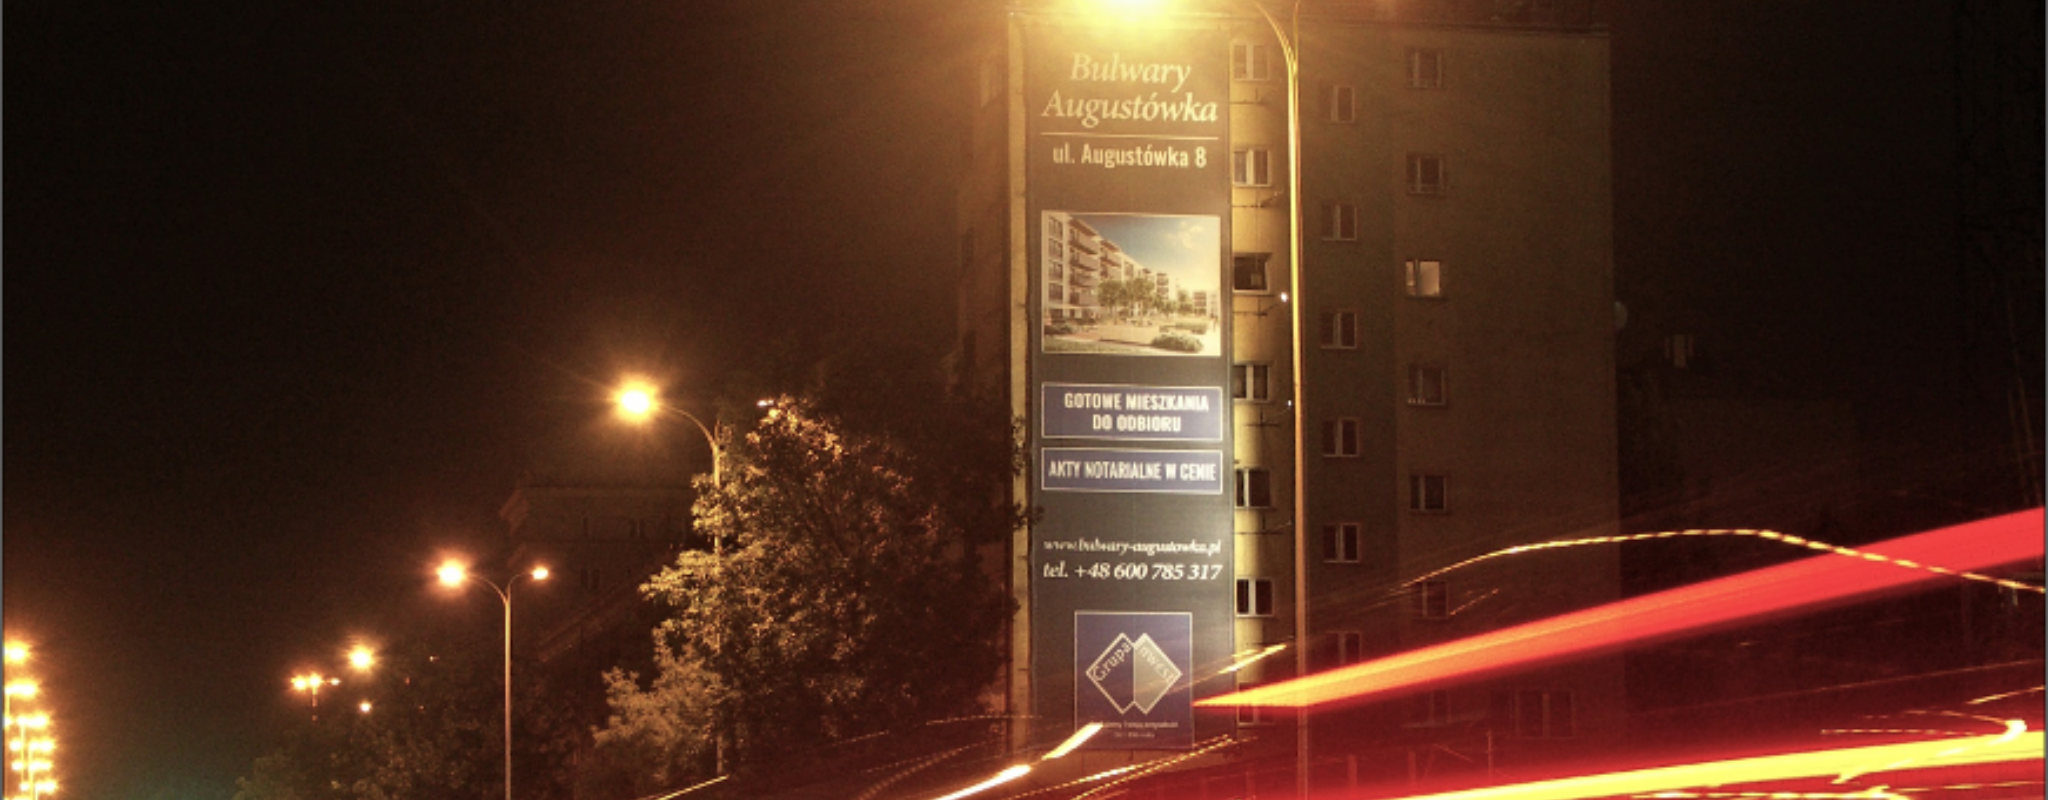 reklama na czerniakowskiej w Warszawie